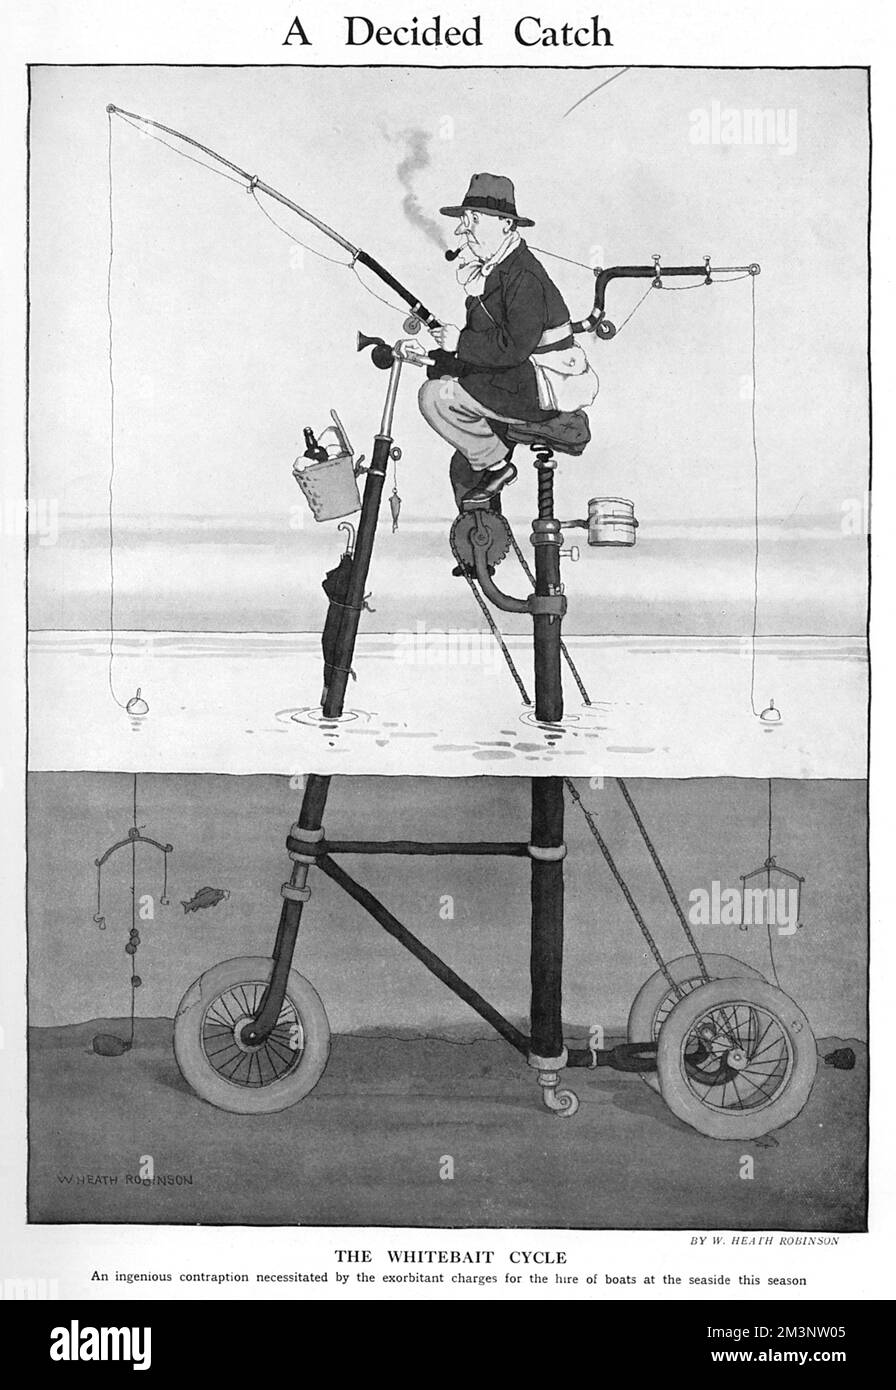 Das Whitebait-Fahrrad, ein geniales Gerät, das durch die exorbitanten Gebühren für die Anmietung von Booten an der Küste in dieser Saison erforderlich ist. Eine weitere brillante Erfindung des Gadget-Königs, William Heath Robinson, bekannt für seine verworrenen und verrückten Vorrichtungen. Datum: 1927 Stockfoto